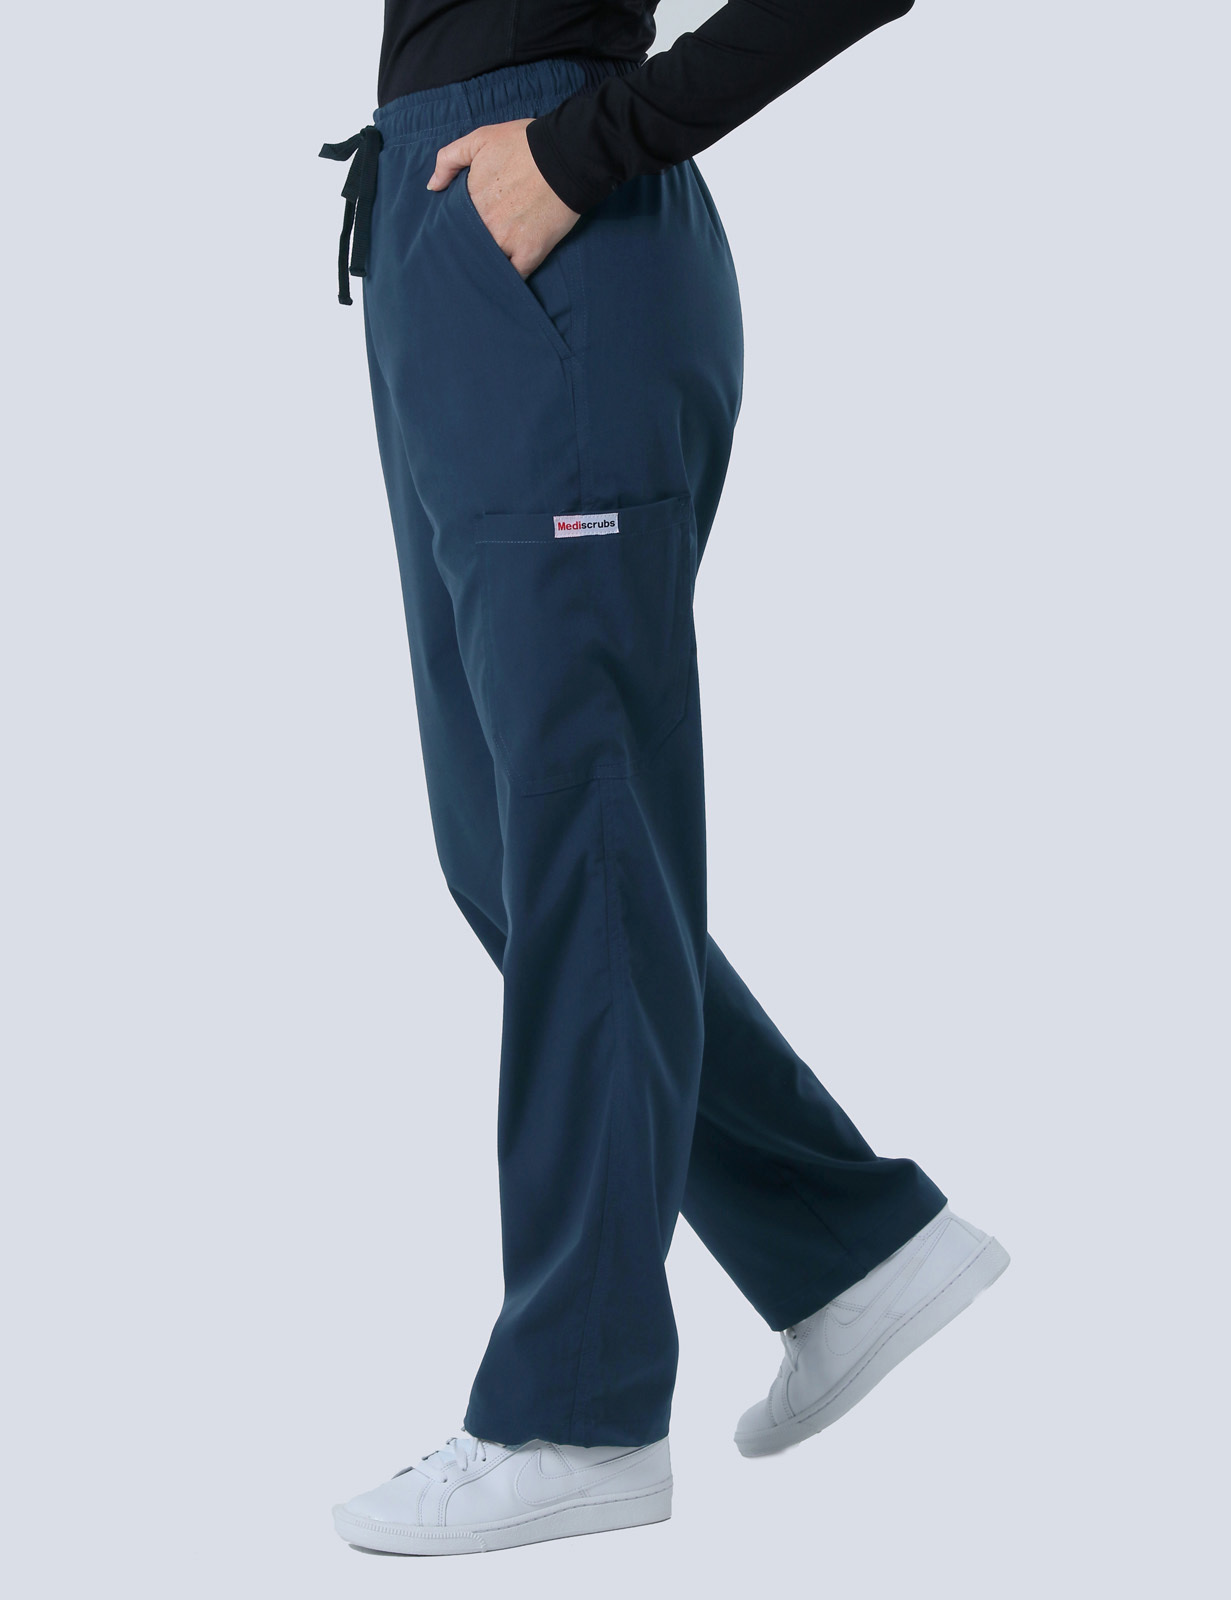 Malvern Endodontics (4 Pocket Scrub Top and Cargo Pants in Navy incl Logos)